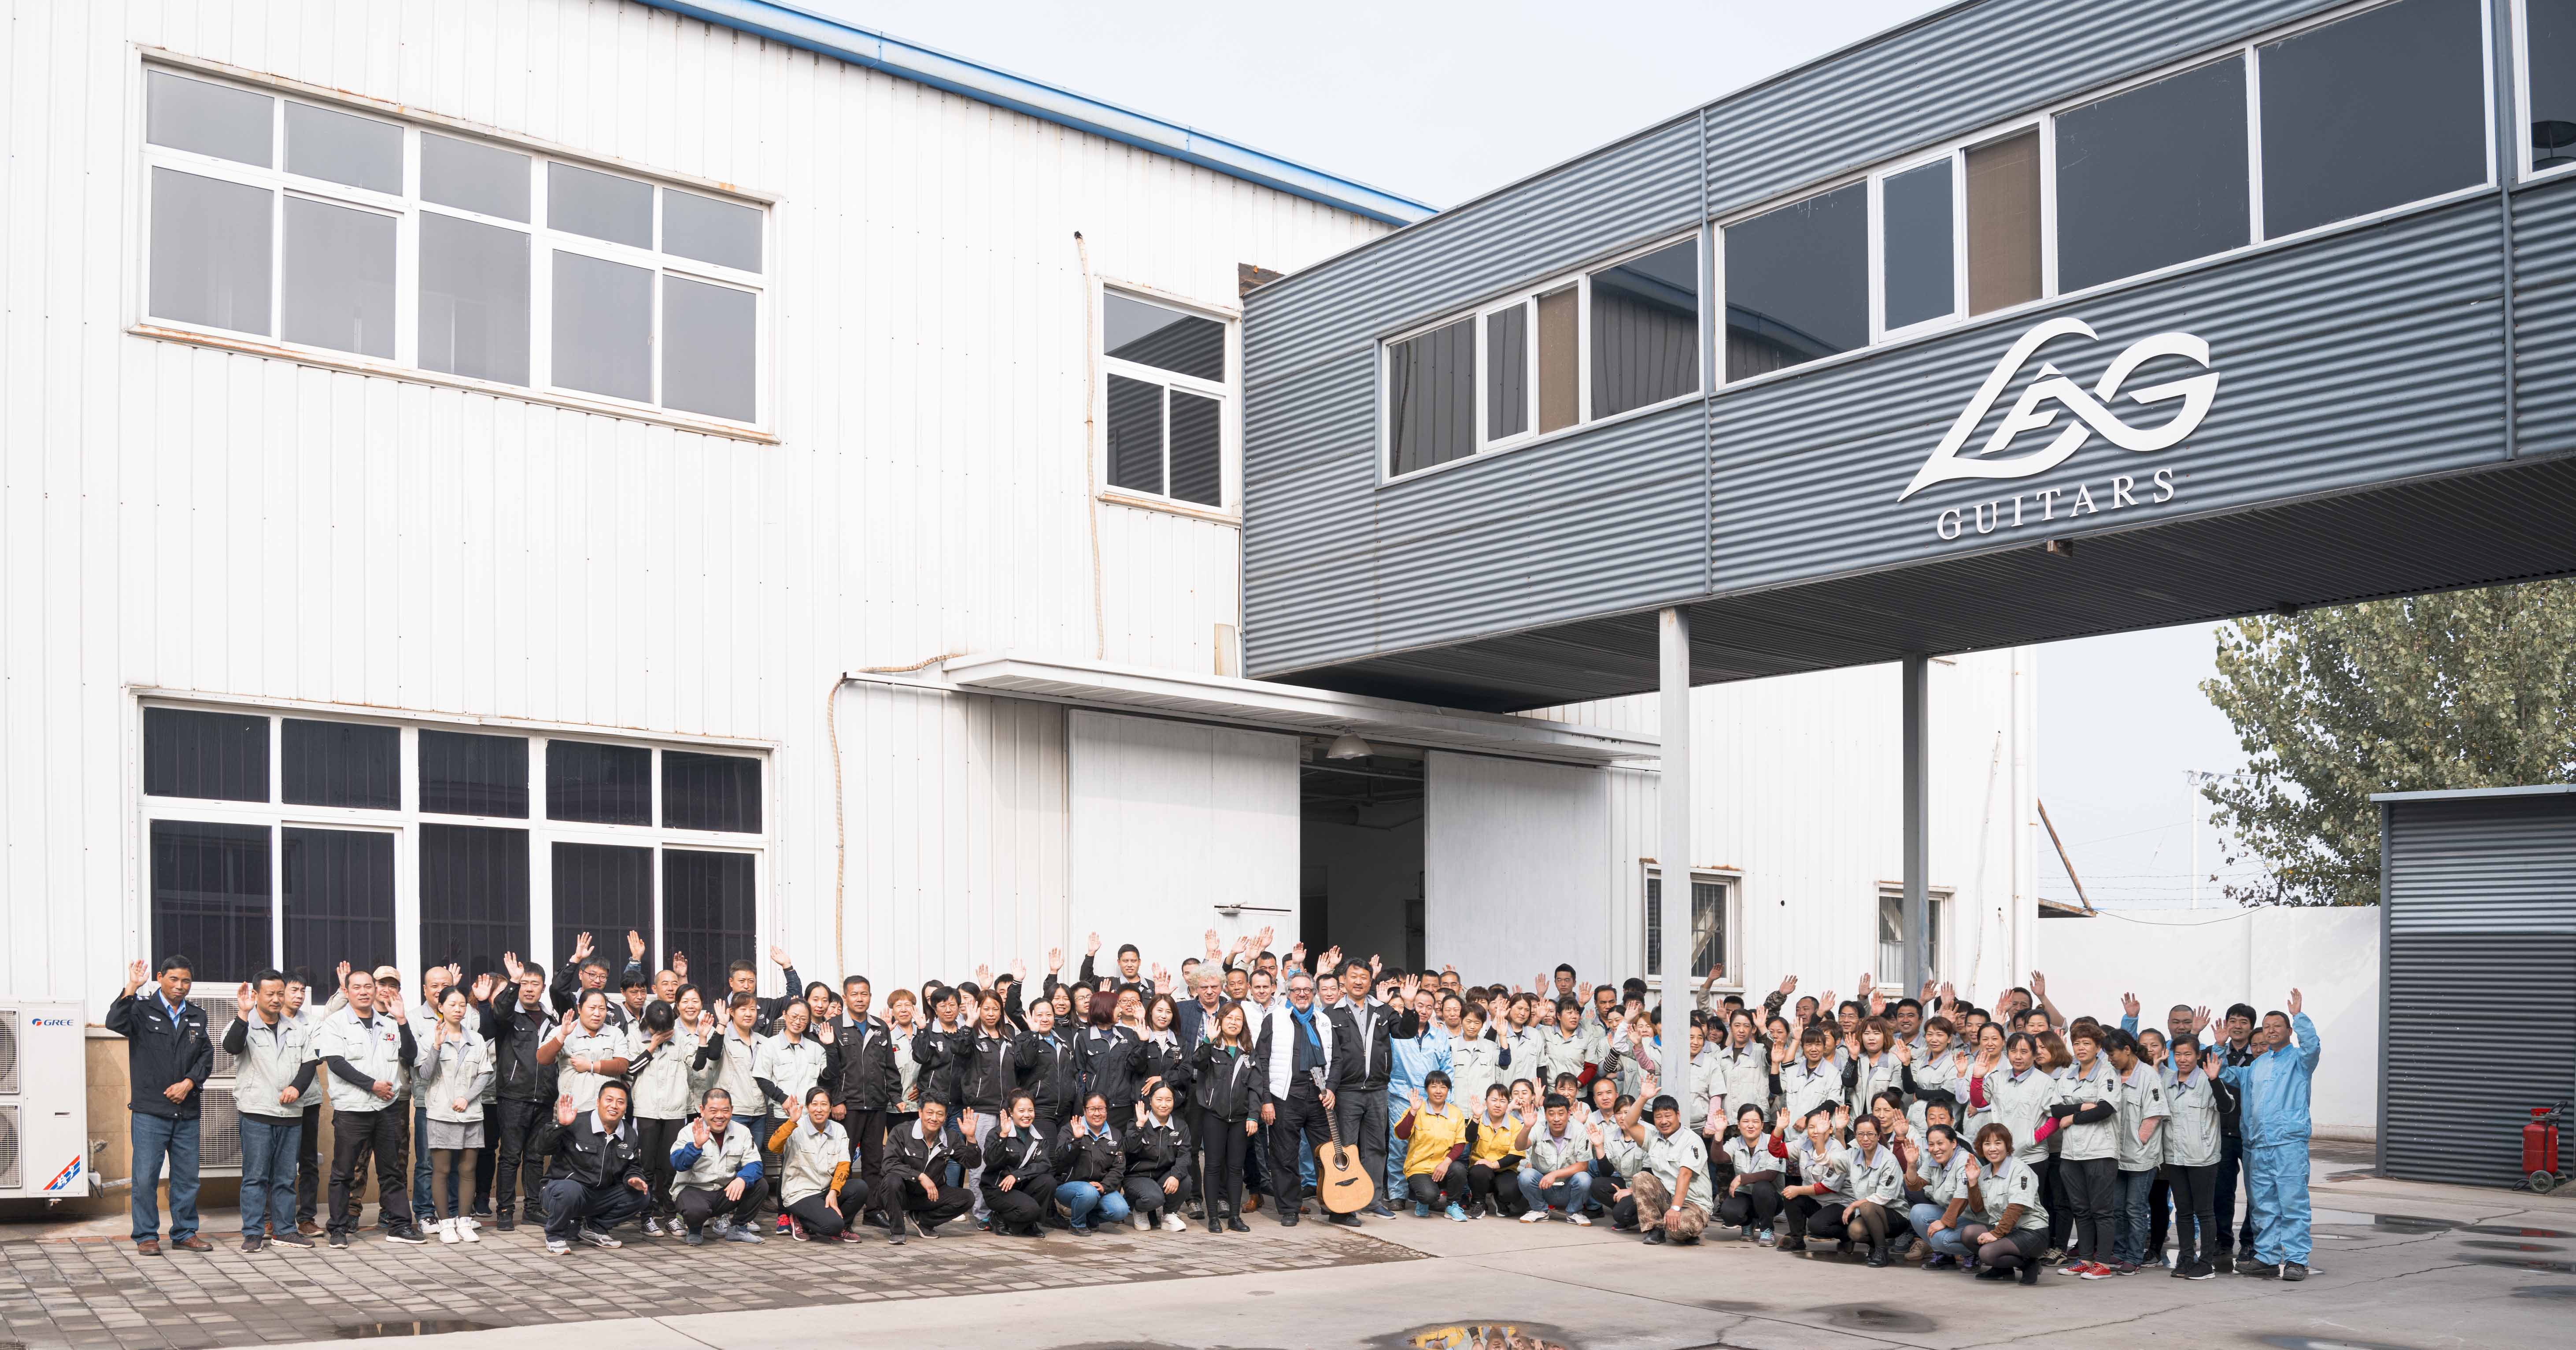 L'ensemble des employés de l'usine Lâg posent et saluent la caméra devant l'entrée de l'usine Lâg à Tianjin